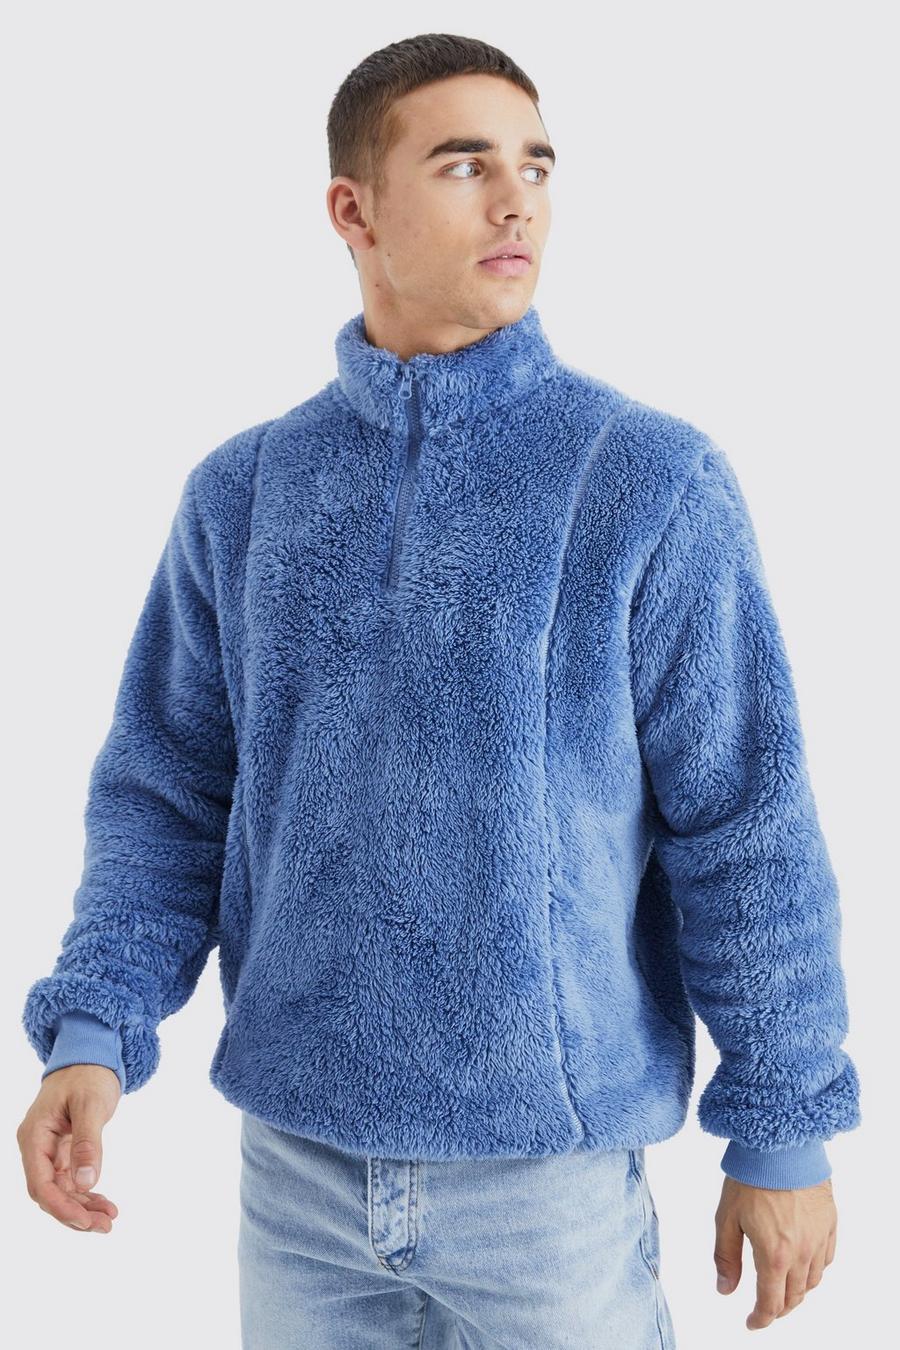 Slate blue Official Sweatshirt i teddy med kort dragkedja och kantband